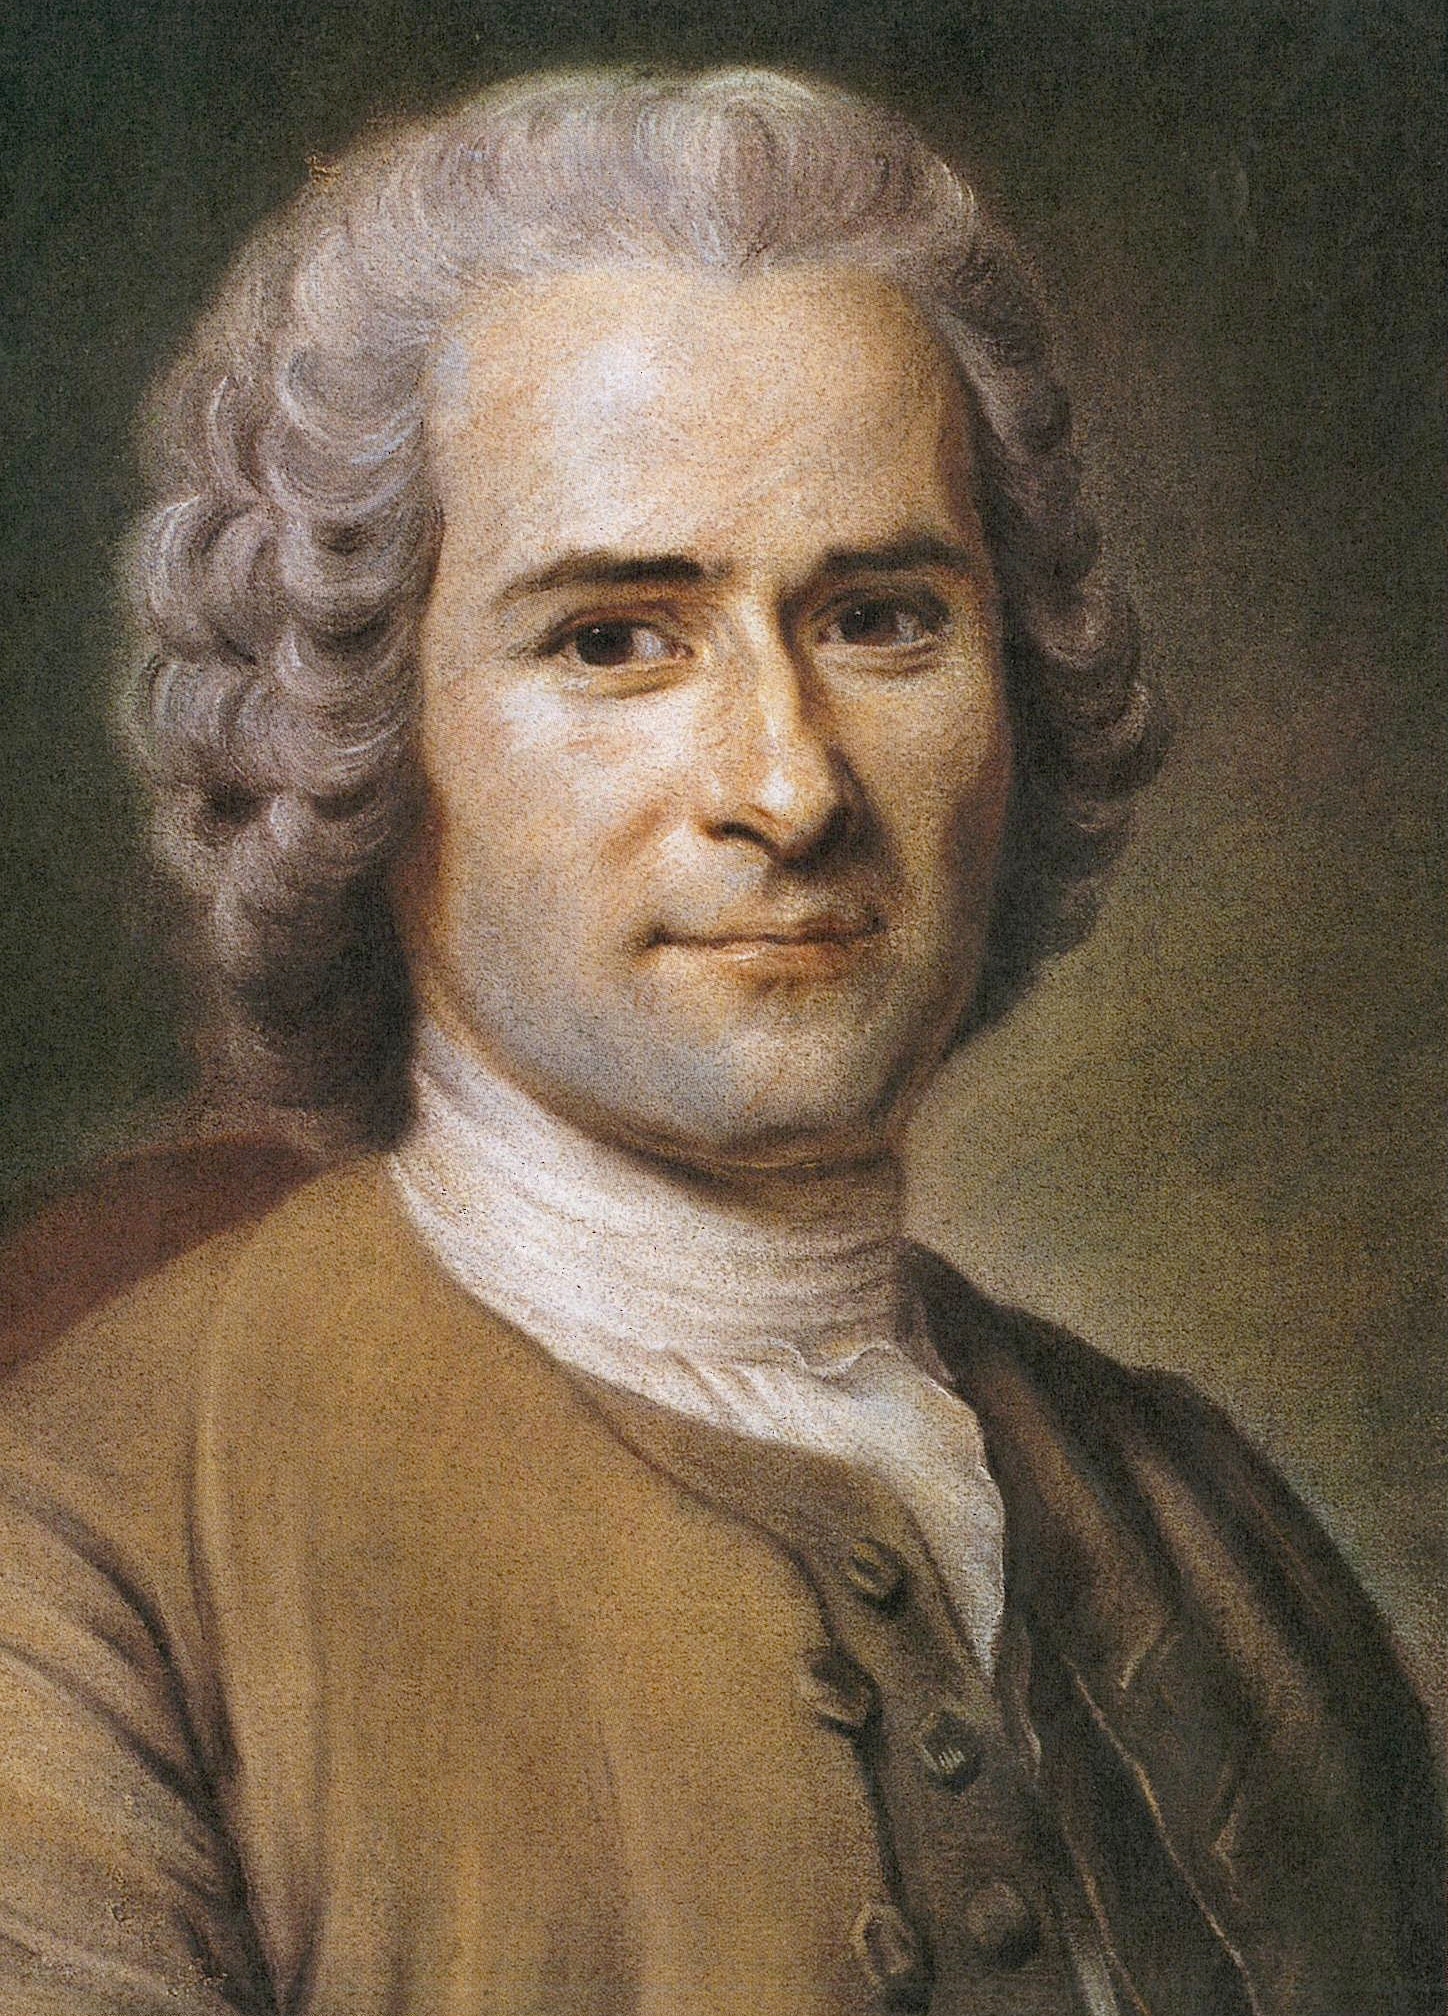 auteur Jean-Jacques Rousseau